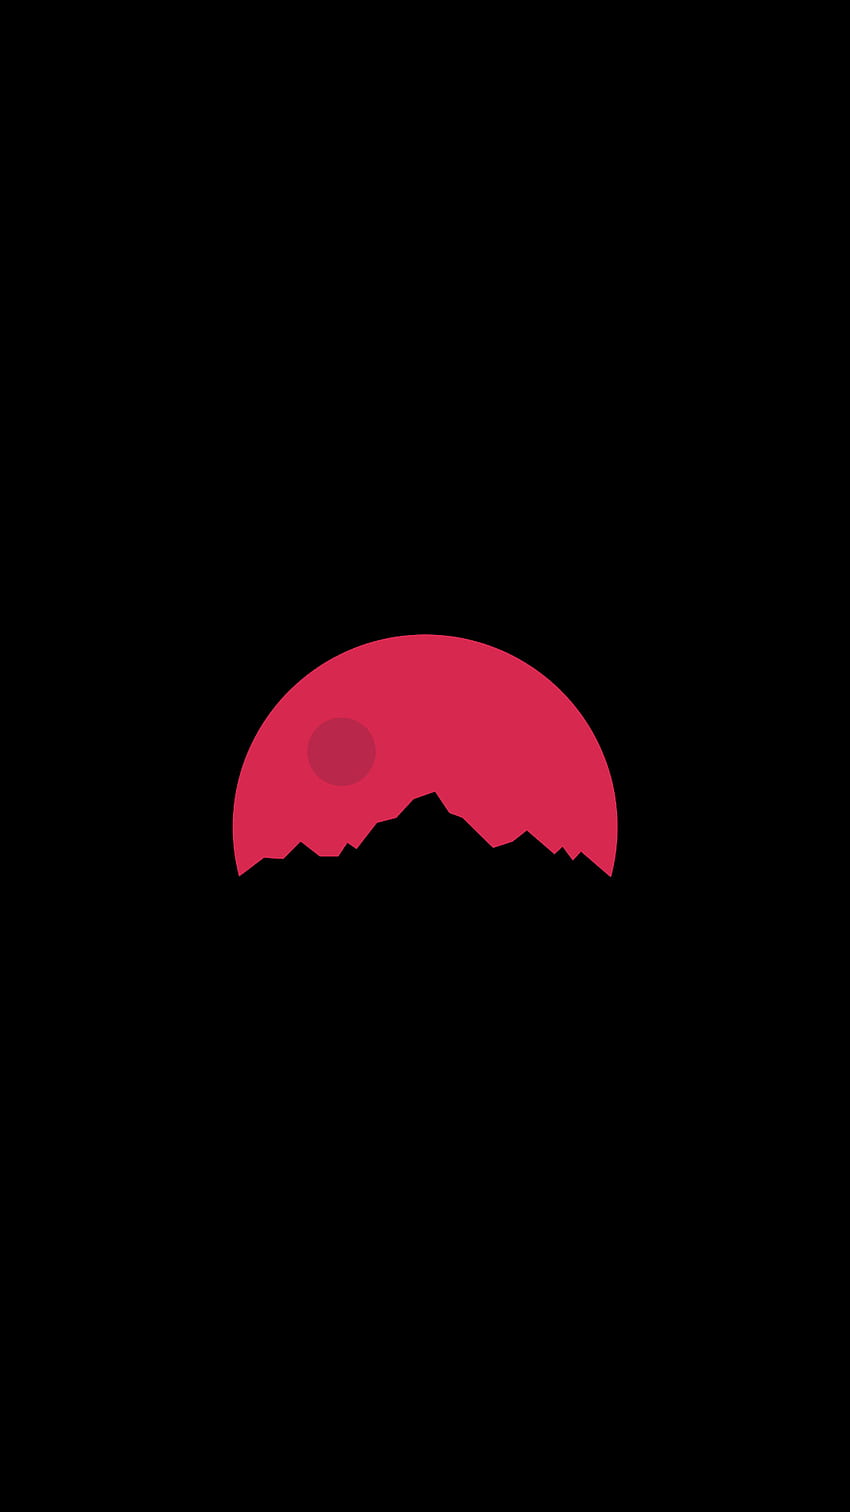 OnePlus bez logo jeszcze idk co powiedzieć lmao Tapeta na telefon HD